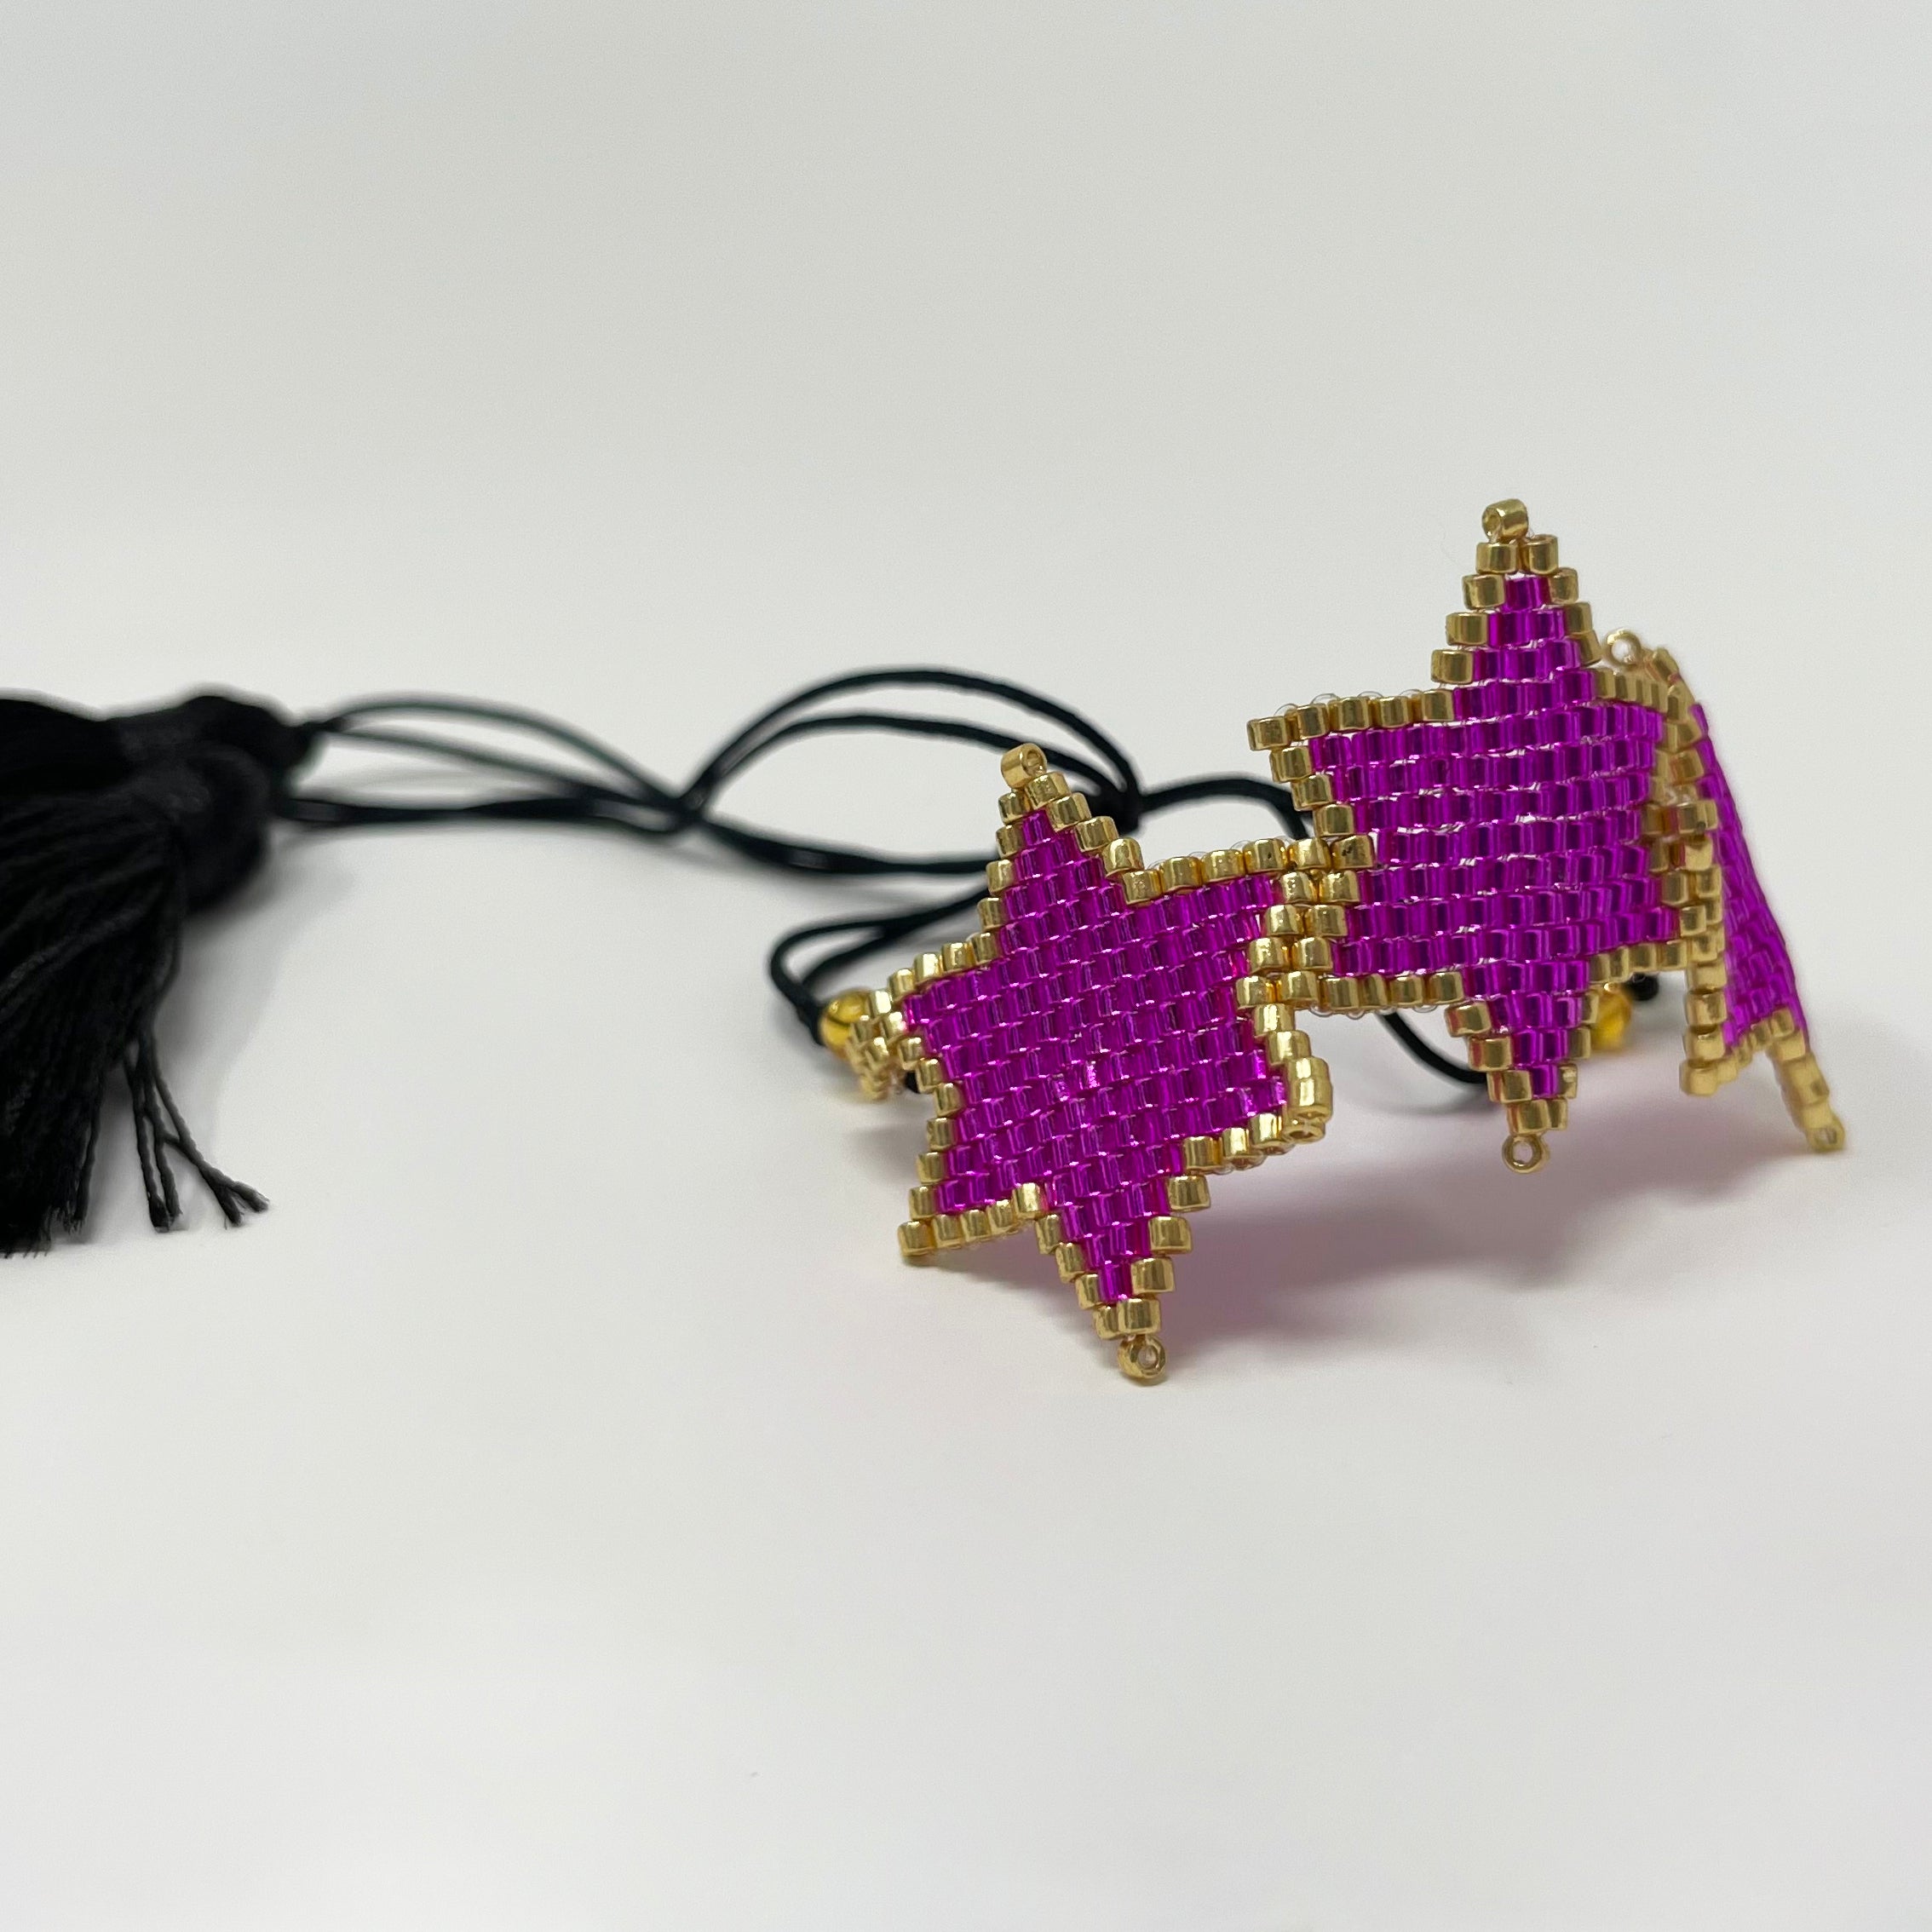 Three Stars - Handmade Miyuki Beads Bracelet